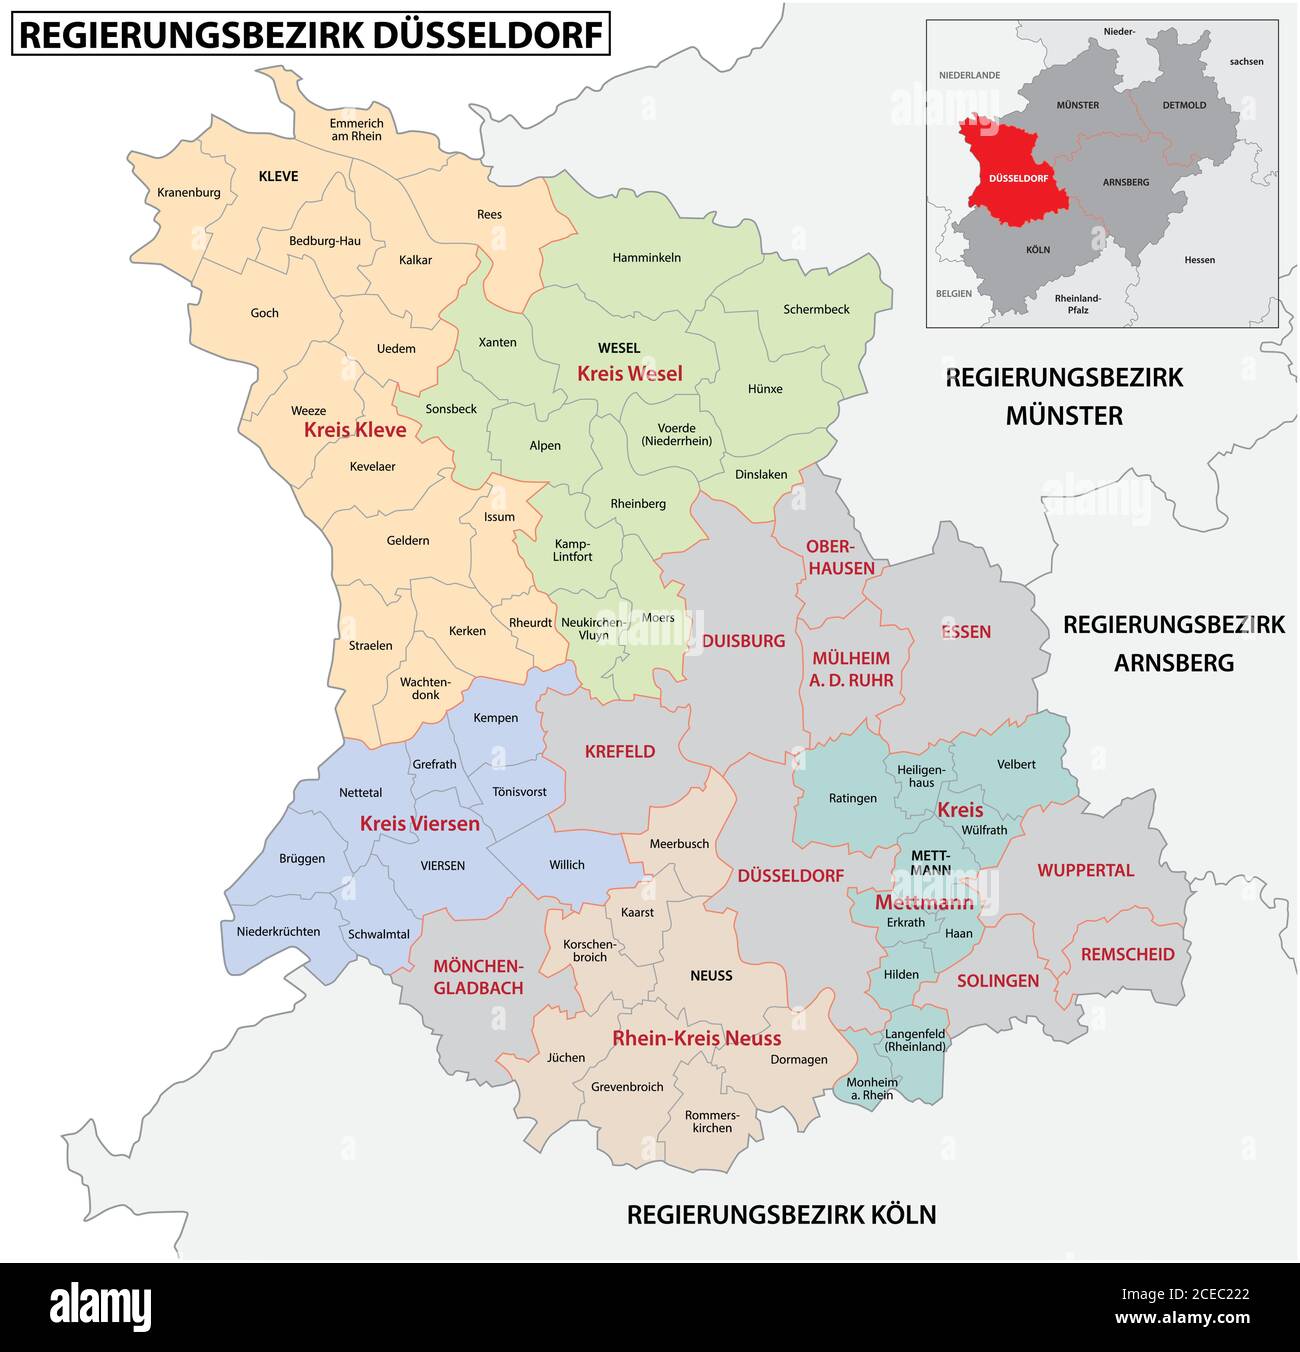 Administrative Vektorkarte der Region Düsseldorf in deutscher Sprache, Nordrhein-Westfalen, Germany.jpg Stock Vektor